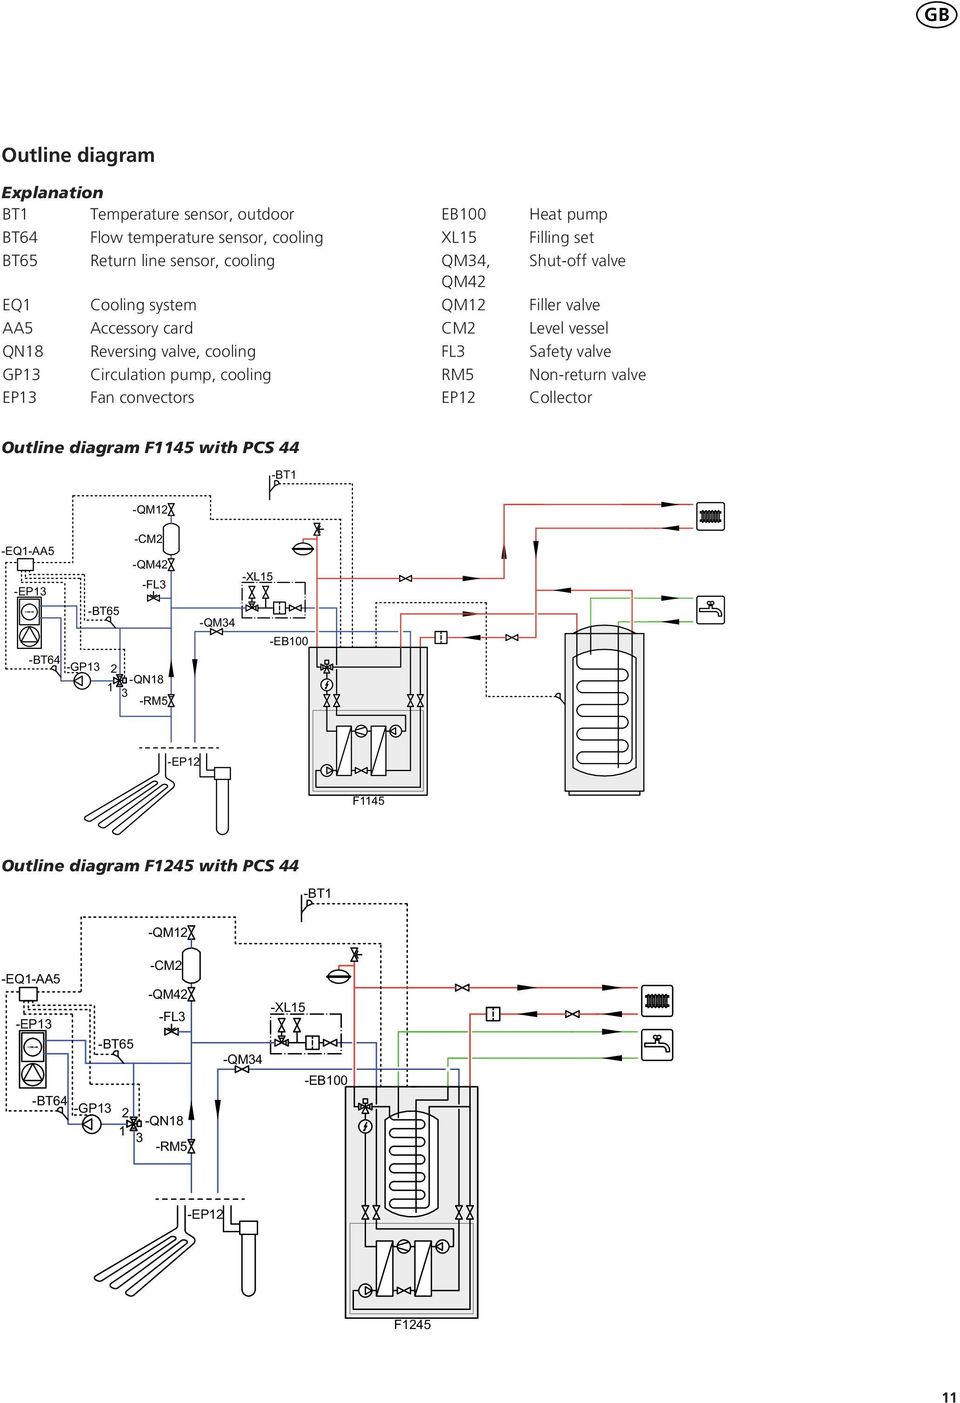 Heat pump Filling set Shut-off valve Filler valve evel vessel Safety valve Non-return valve Collector Outline diagram F with PCS -T